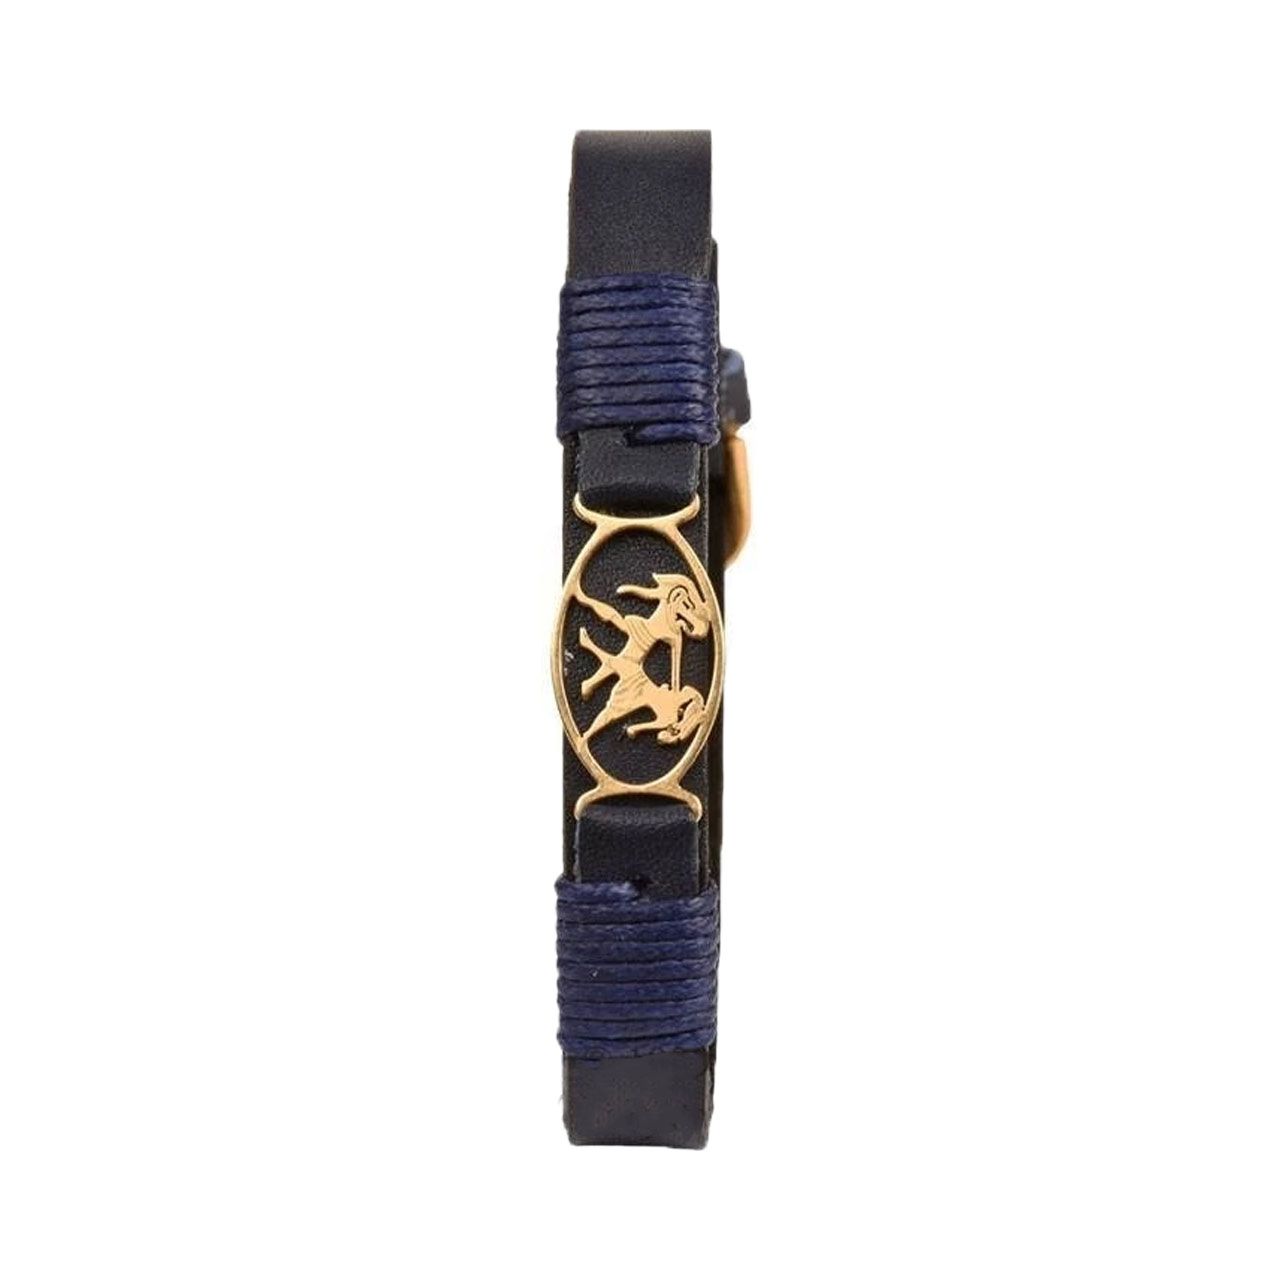 دستبند زنانه پارینه چرم طرح تولد خرداد مدل BR700106 -  - 3